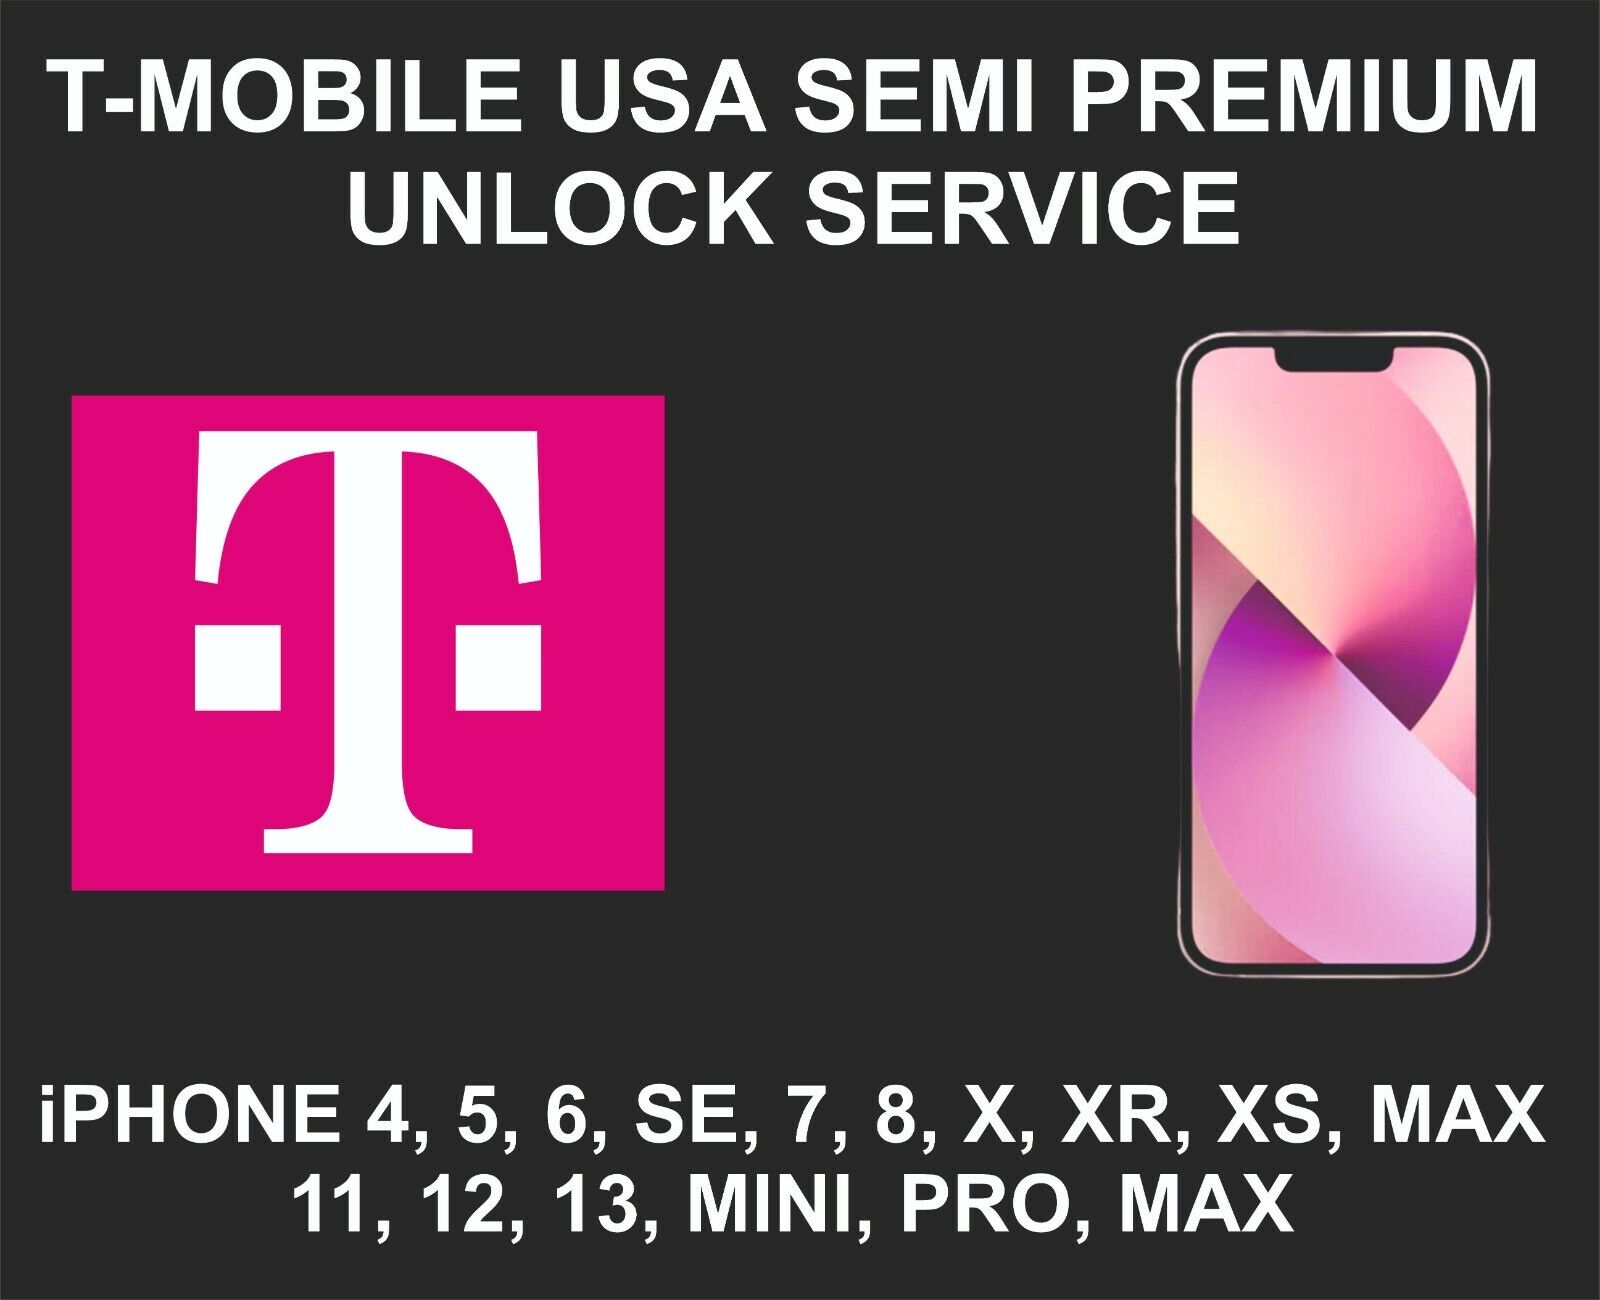 T-mobile Usa Semi Premium Unlock Service, Fits Iphone 8, X, Xr, Xs, 12, 13 Pro